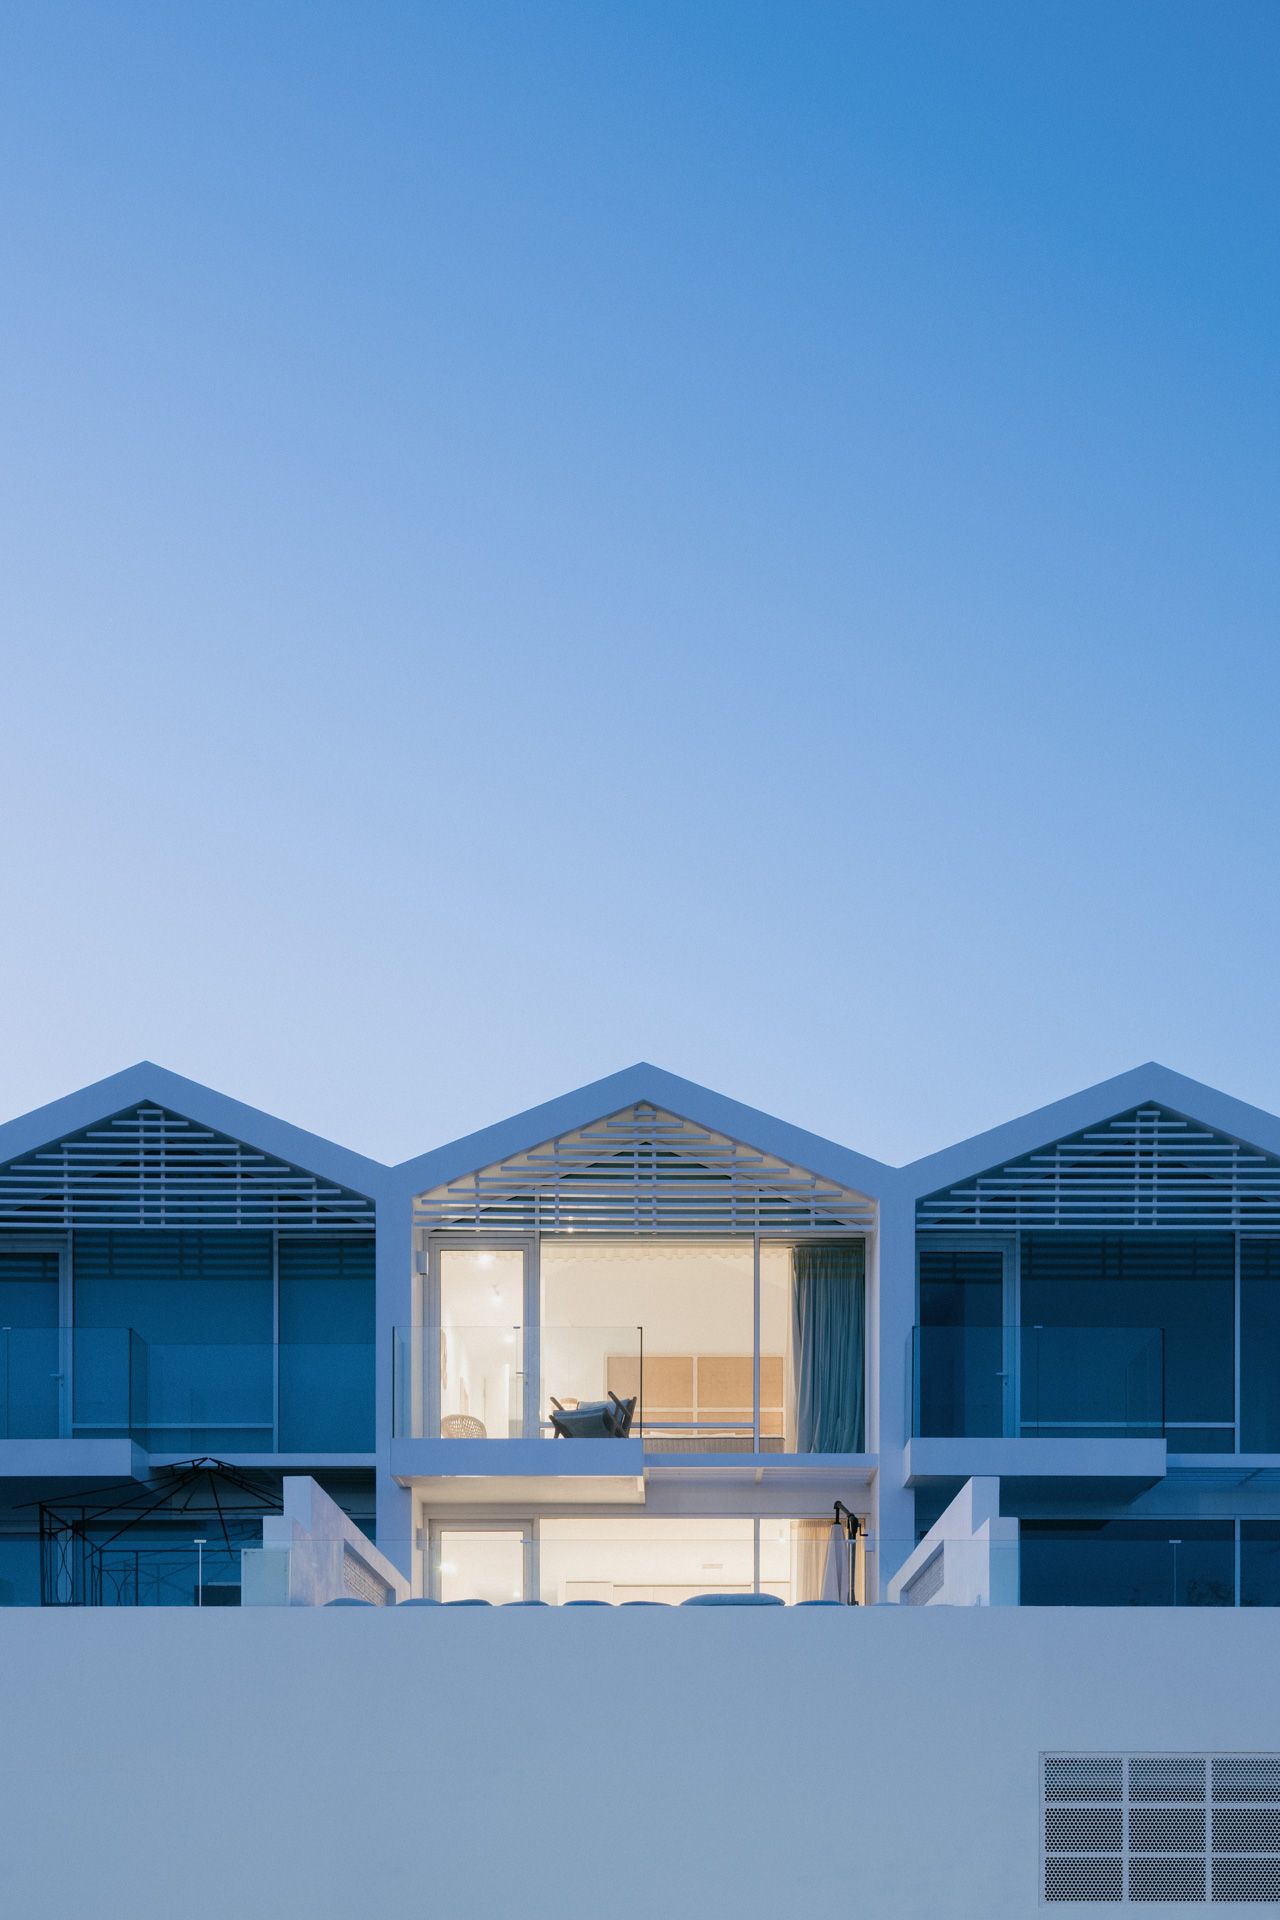 Maison de 3 chambres à vendre dans la municipalité de Tavira, Algarve